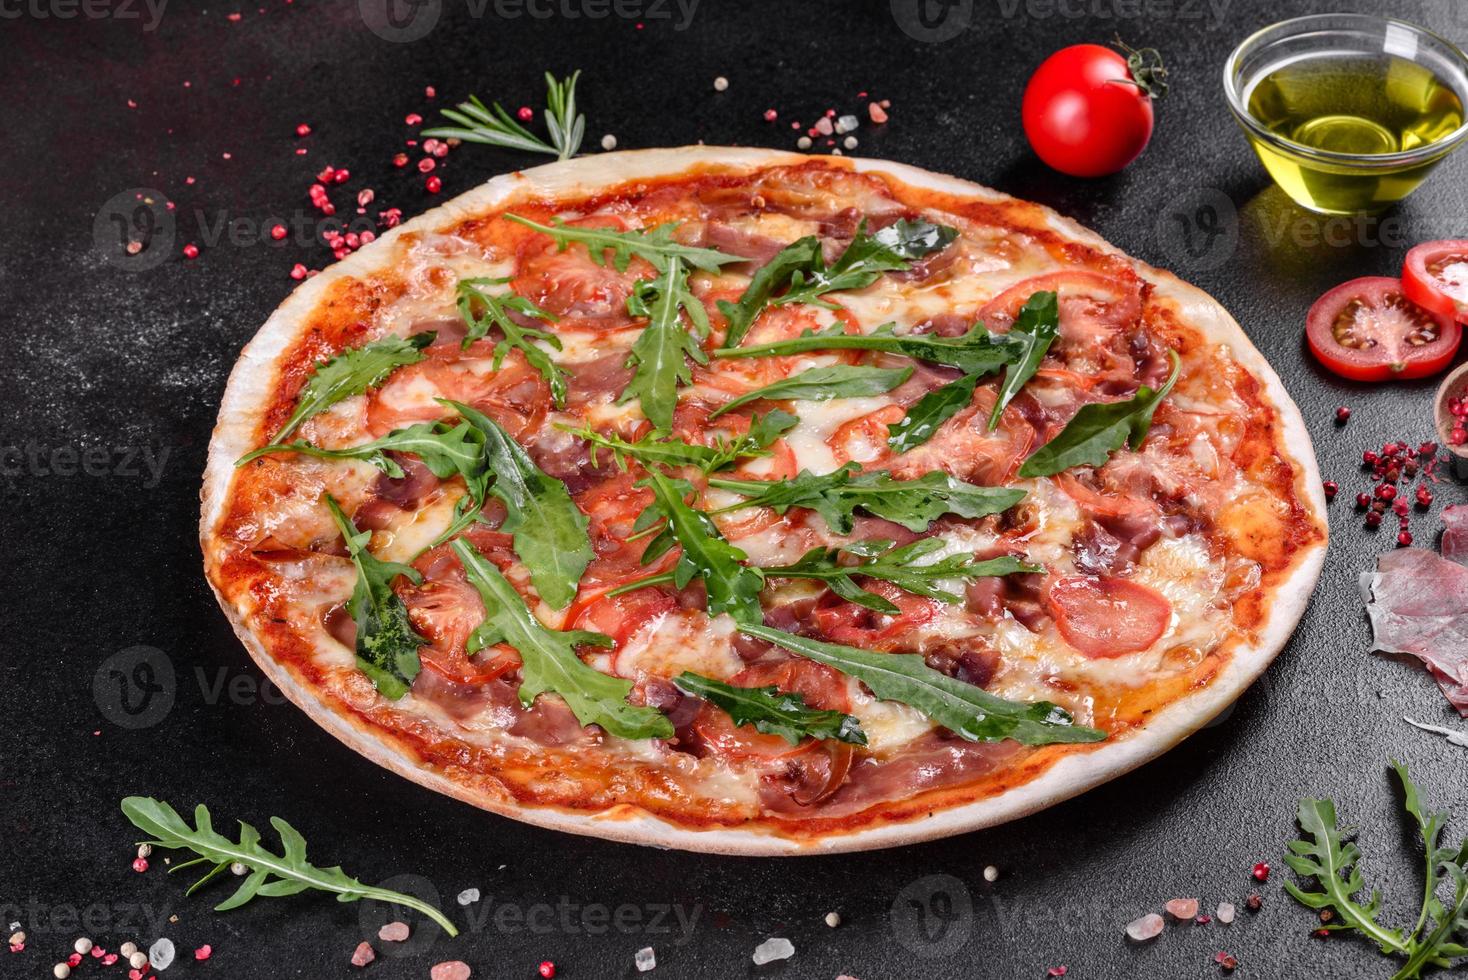 pizza fresca al forno con rucola, salame foto